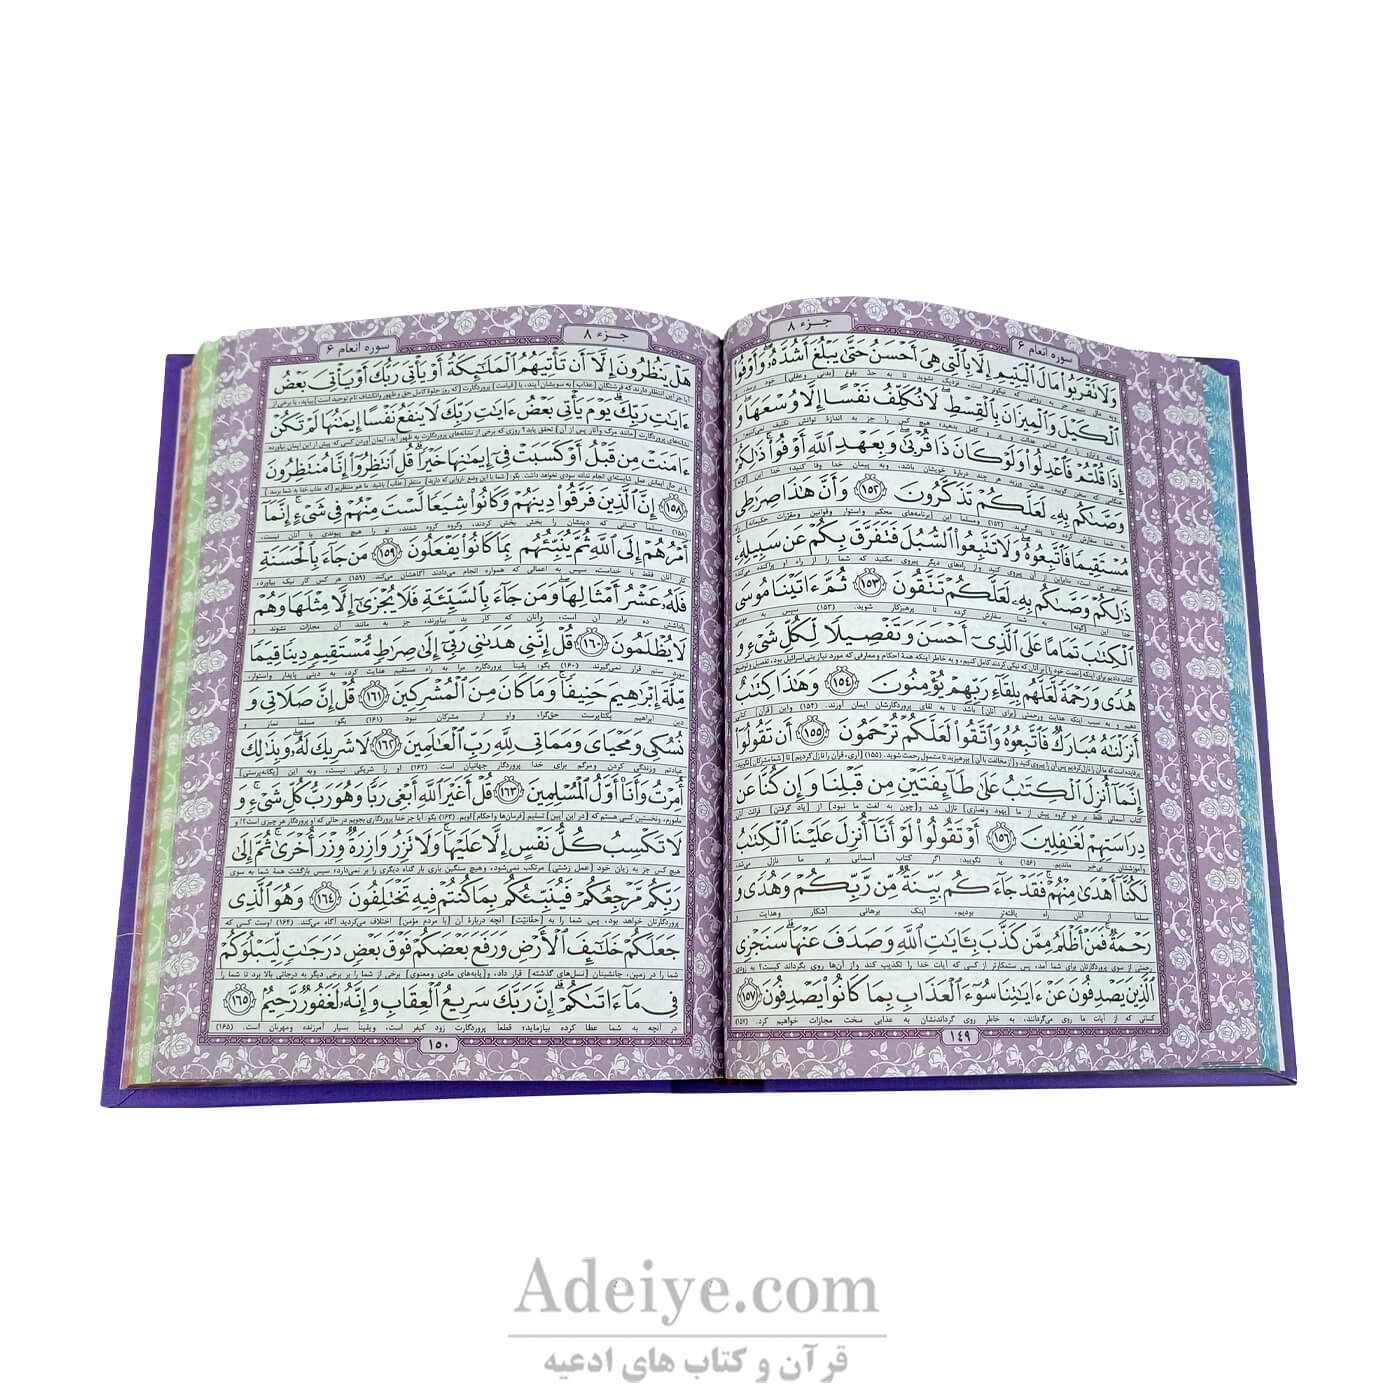 کتاب قرآن (وزیری، گالینگور، عثمان طه)-عکس متن2